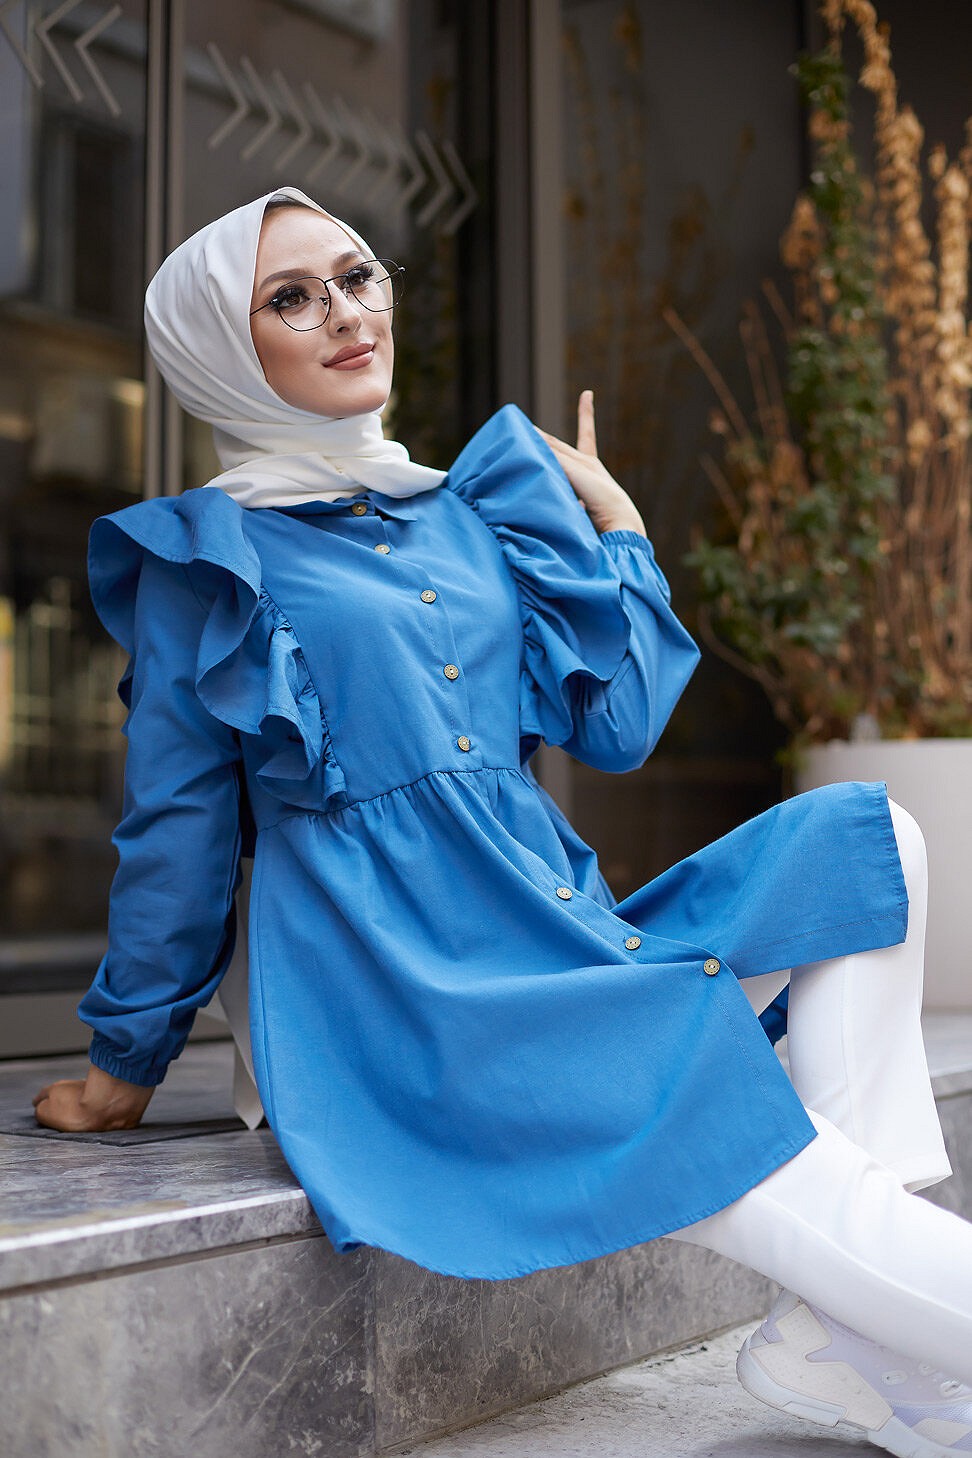 Chemise à froufrou (Vetement femme voilée en ligne) - Couleur bleu pétrole